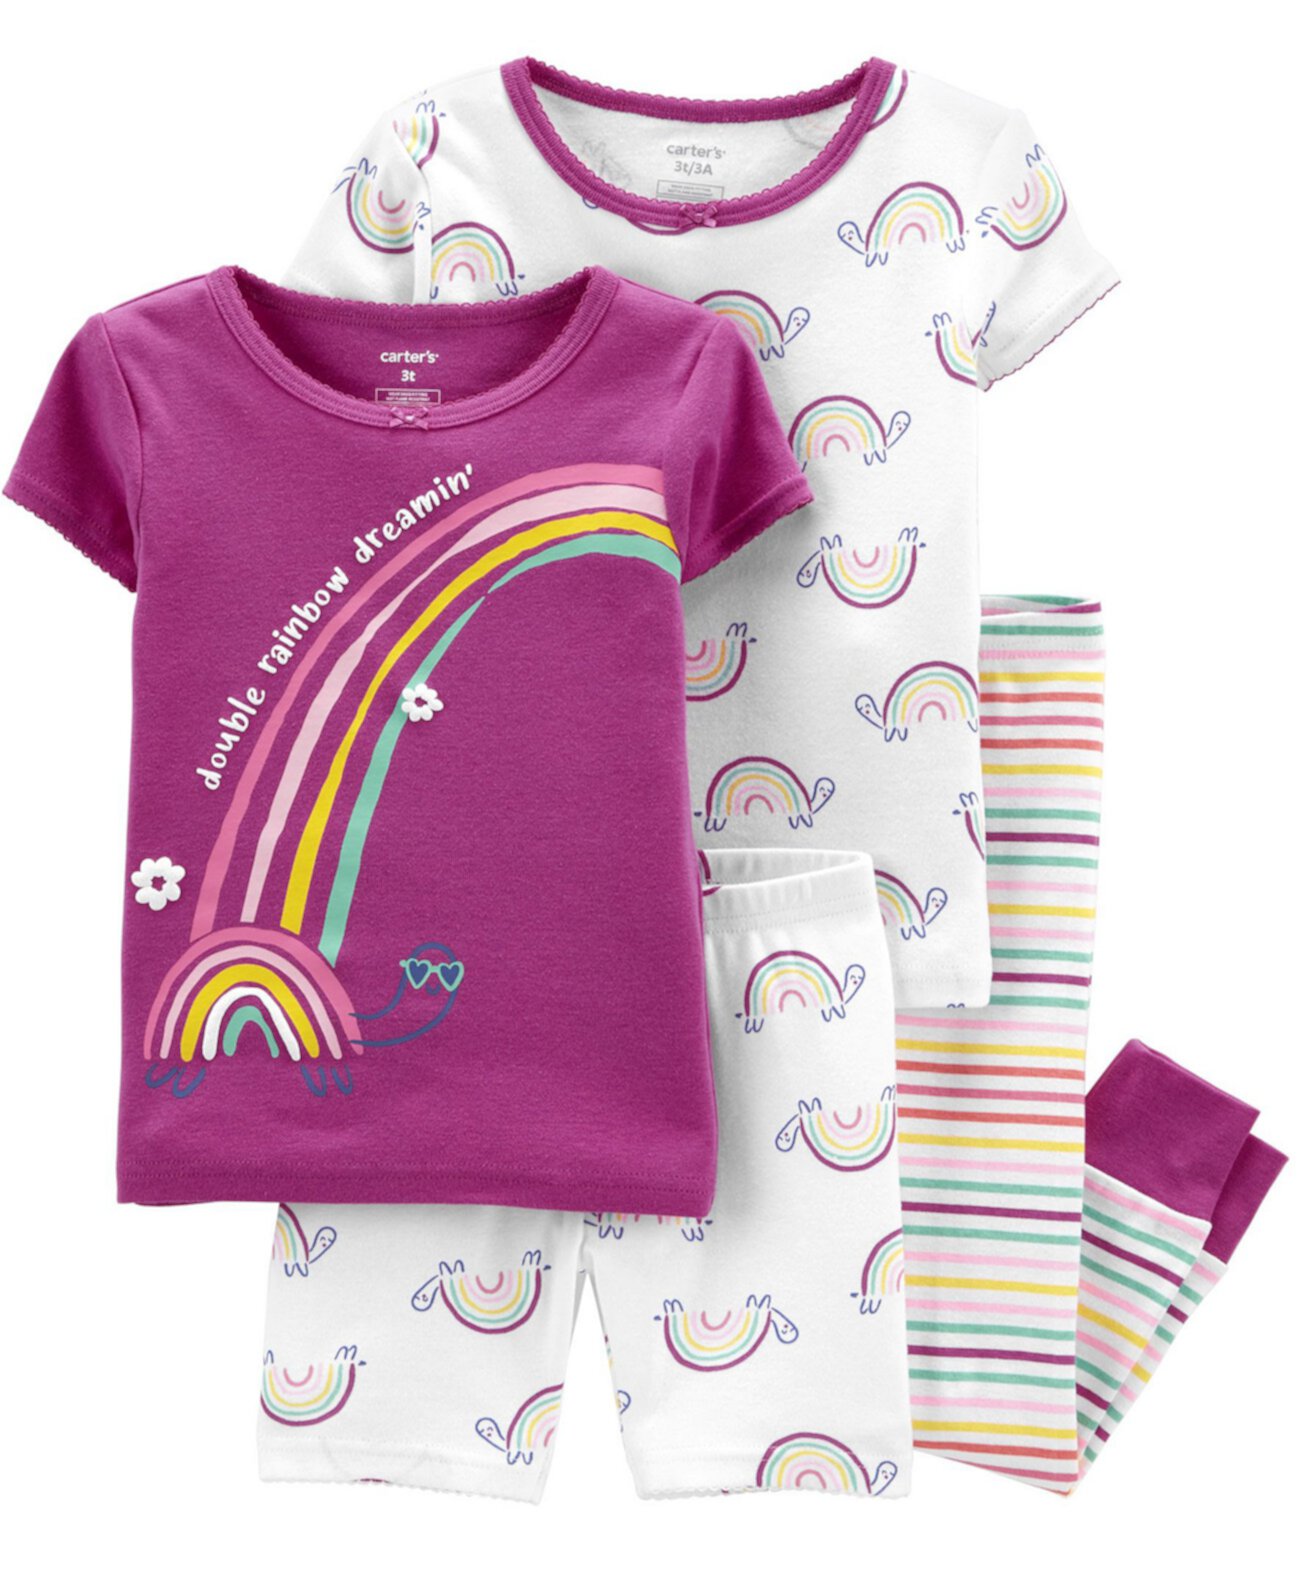 Пижама для новорожденных девочек Rainbow Snug Fit, комплект из 4 предметов Carter's